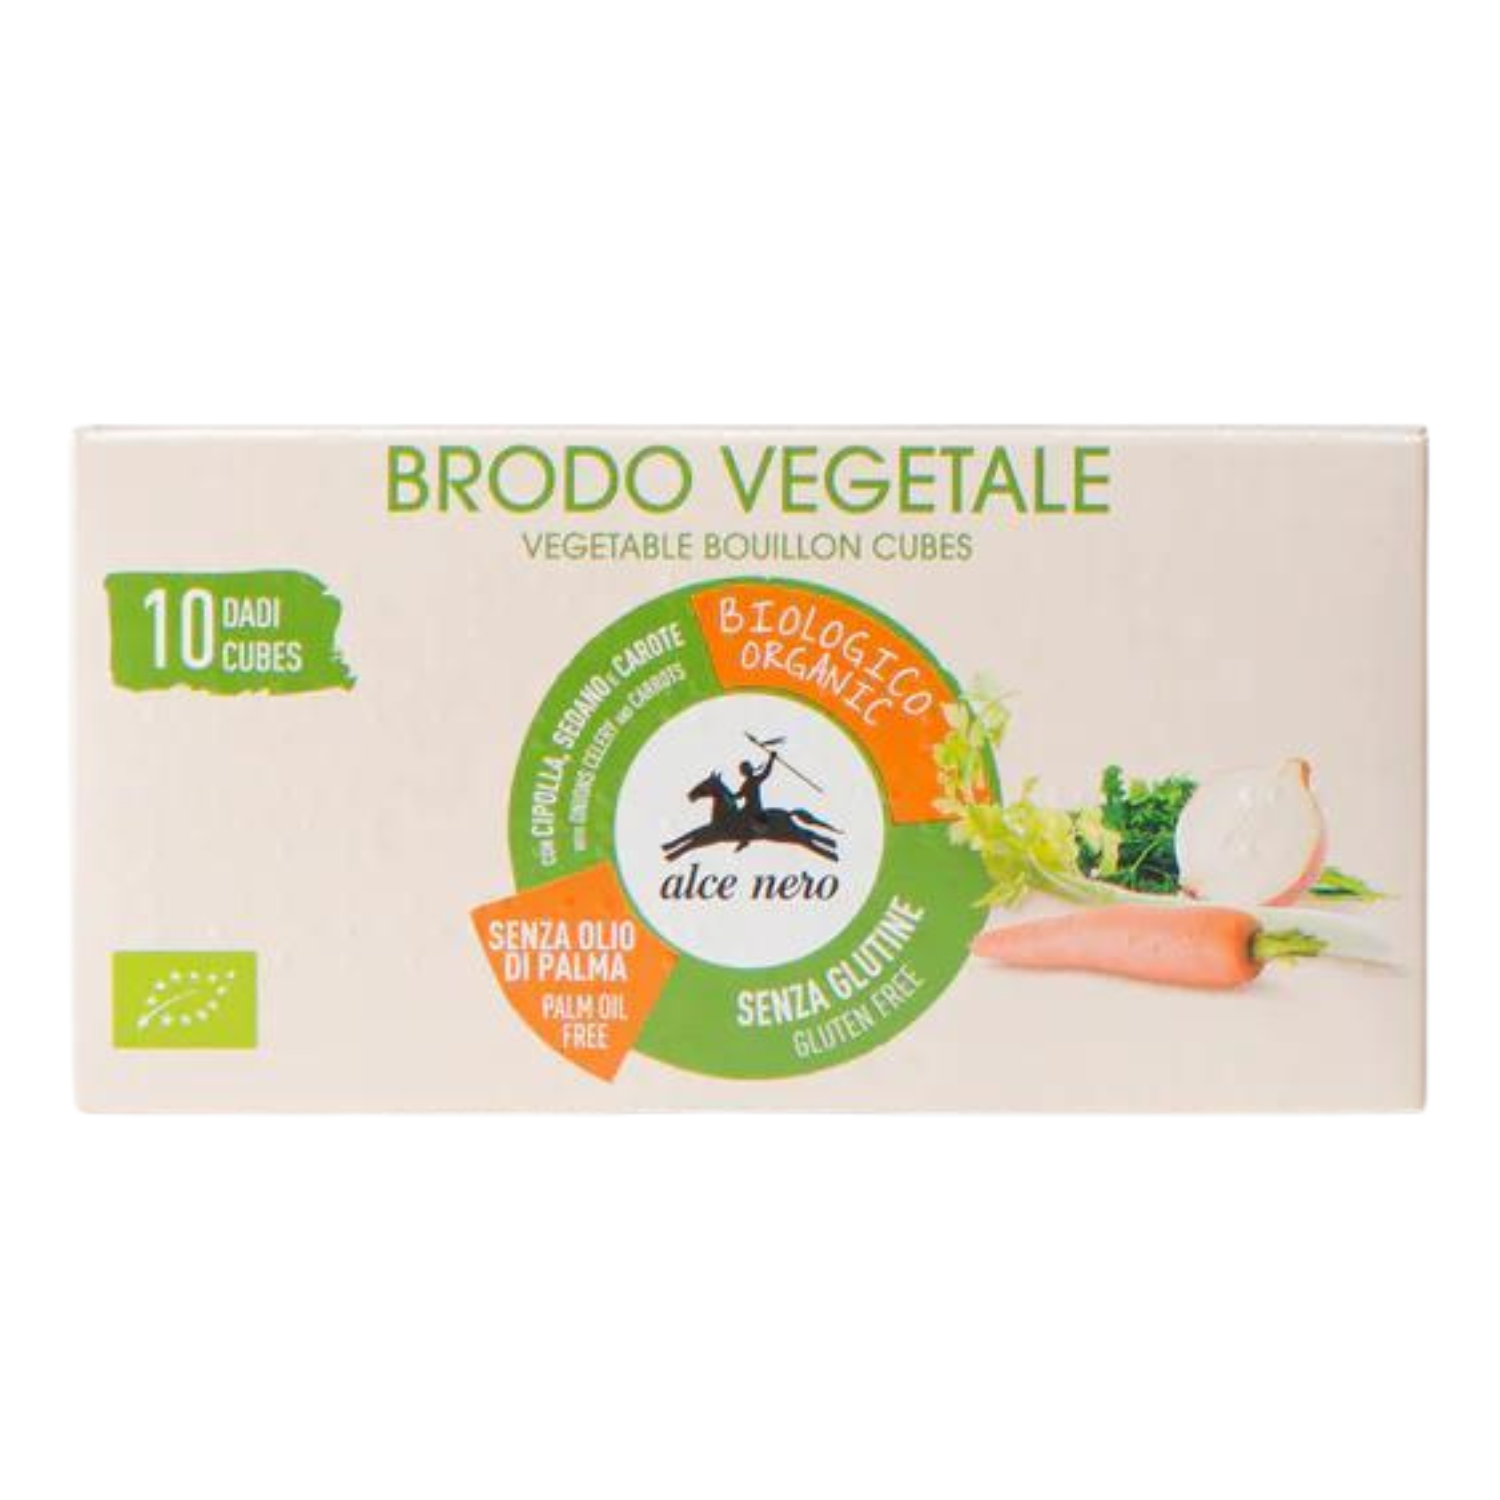 Brodo vegetale (10 dadi) 100g